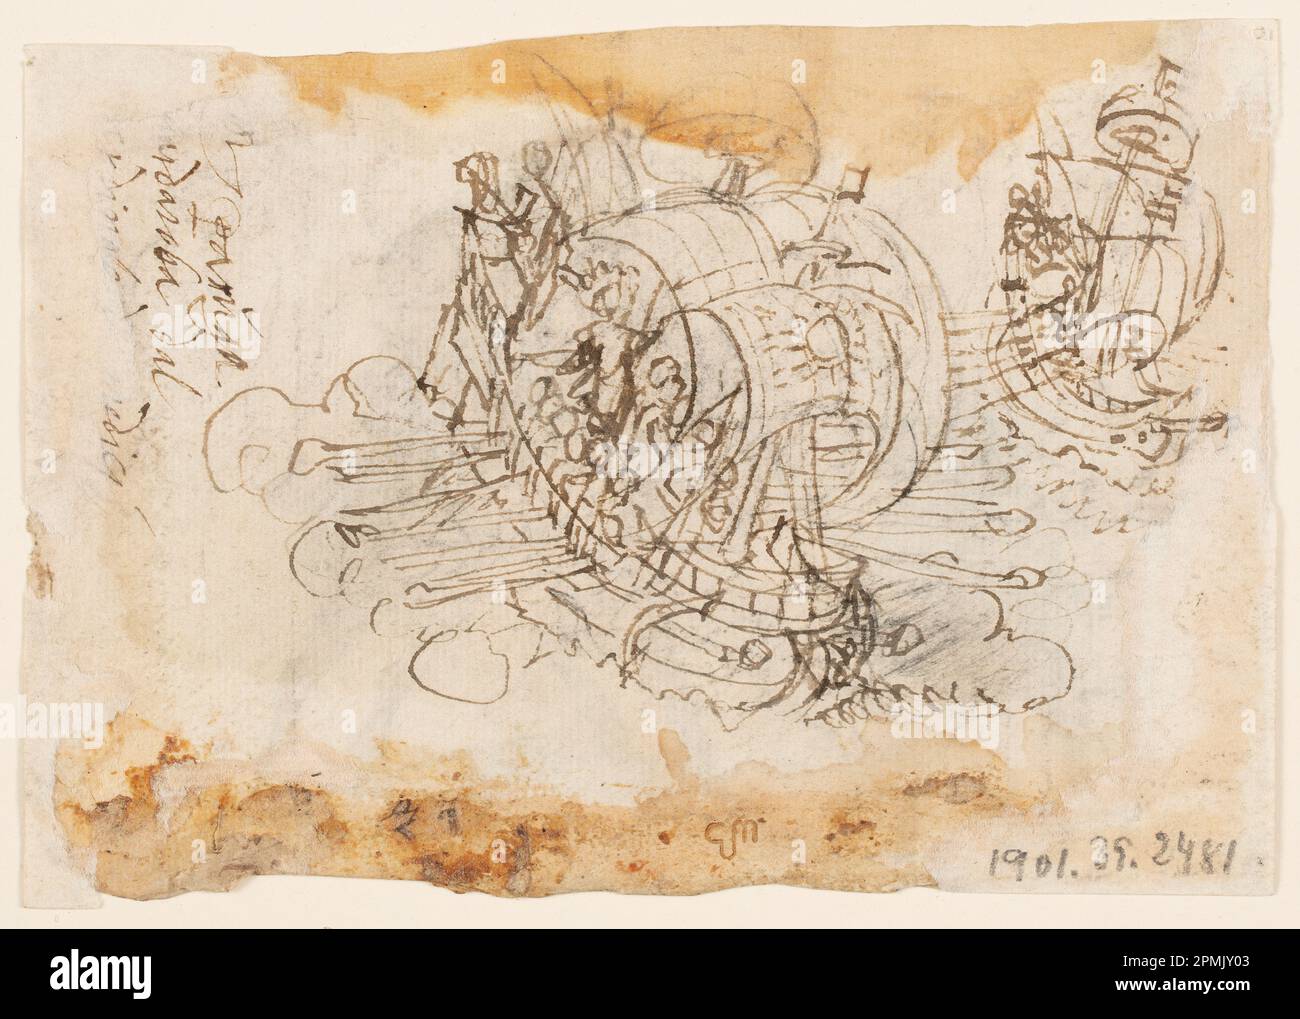 Zeichnung, die Hirschjagd von Kaiser Frederick i Barbarossa und Ubaldo Ubaldini; Jan van der Straet, genannt Stradanus (Flämisch, 1523–1605); graviert von Adriaen Collaert (Flämisch, ca. 1560-1618); Veröffentlicht von Philips Galle (Flämisch, 1537-1612); Niederlande; Stift und braune Tinte, Bürste und braunes Waschen, über schwarzer Kreide auf Papier; 10,5 x 15 cm (4 1/8 x 5 7/8 Zoll) Stockfoto